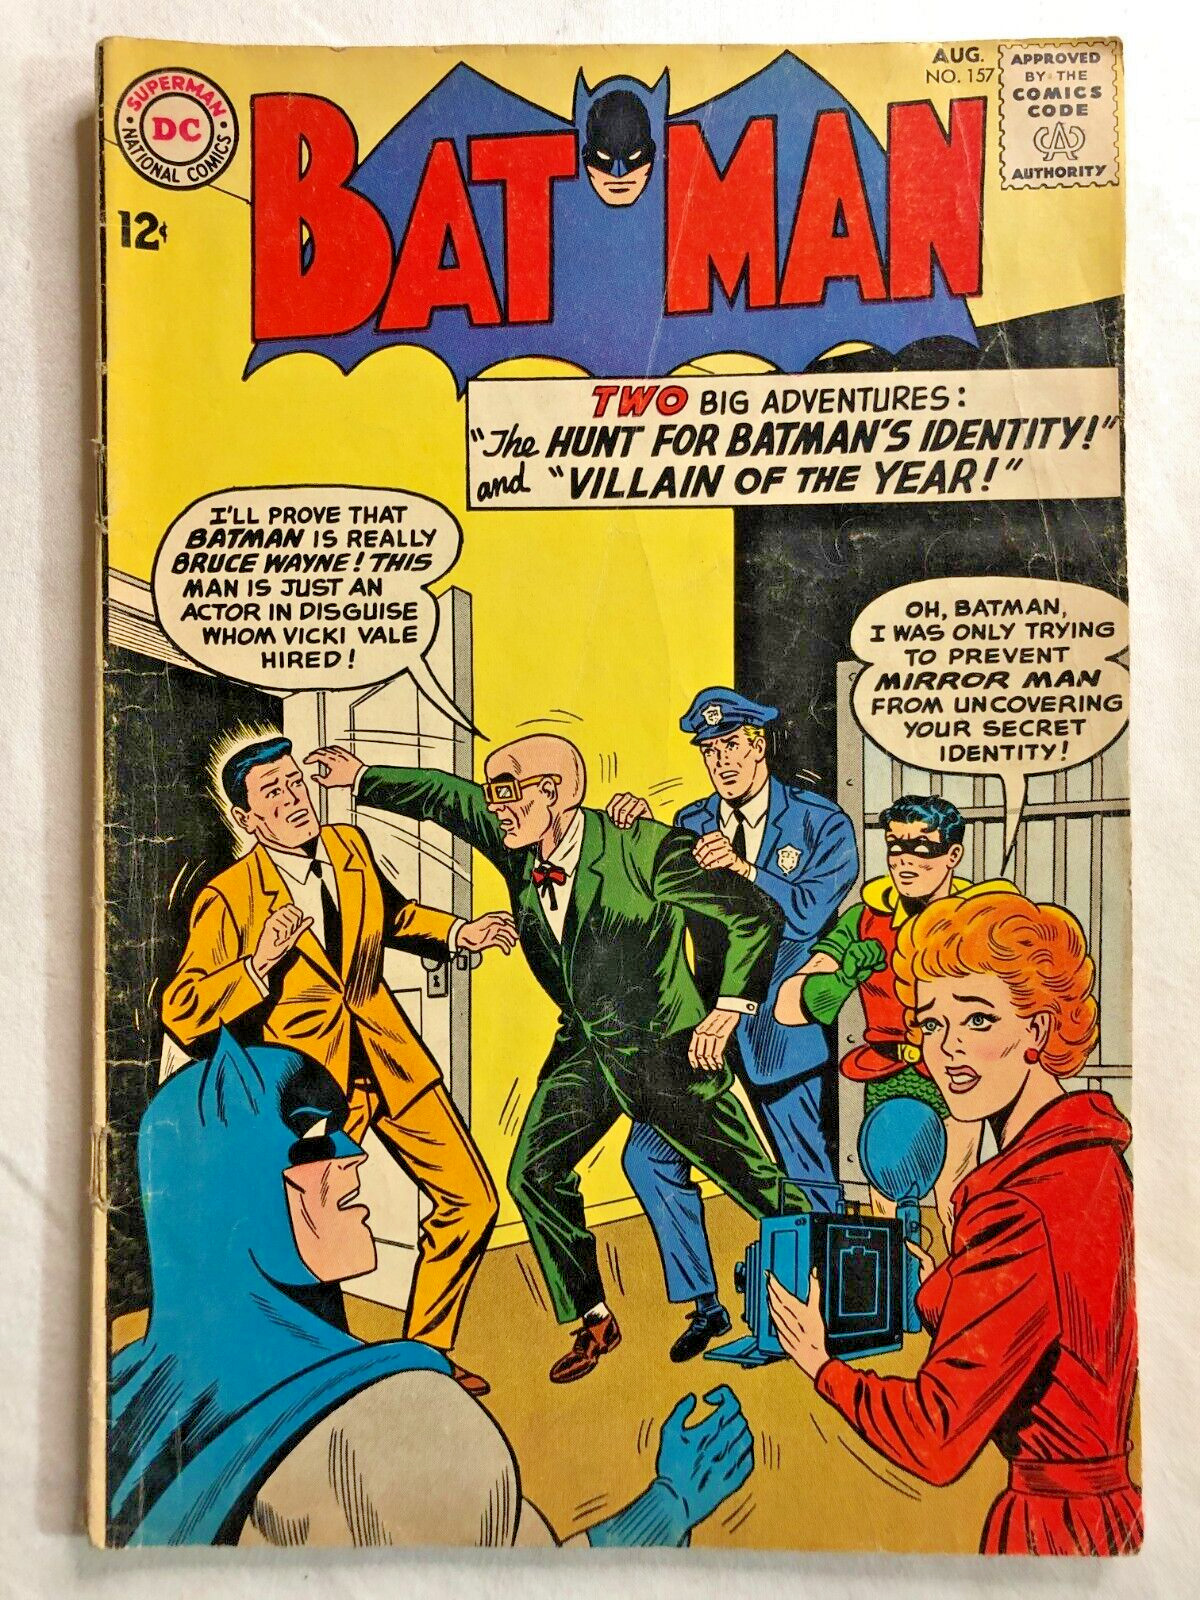 Batman #157 August 1963 Vintage Silver Age DC Comics Nice Condition